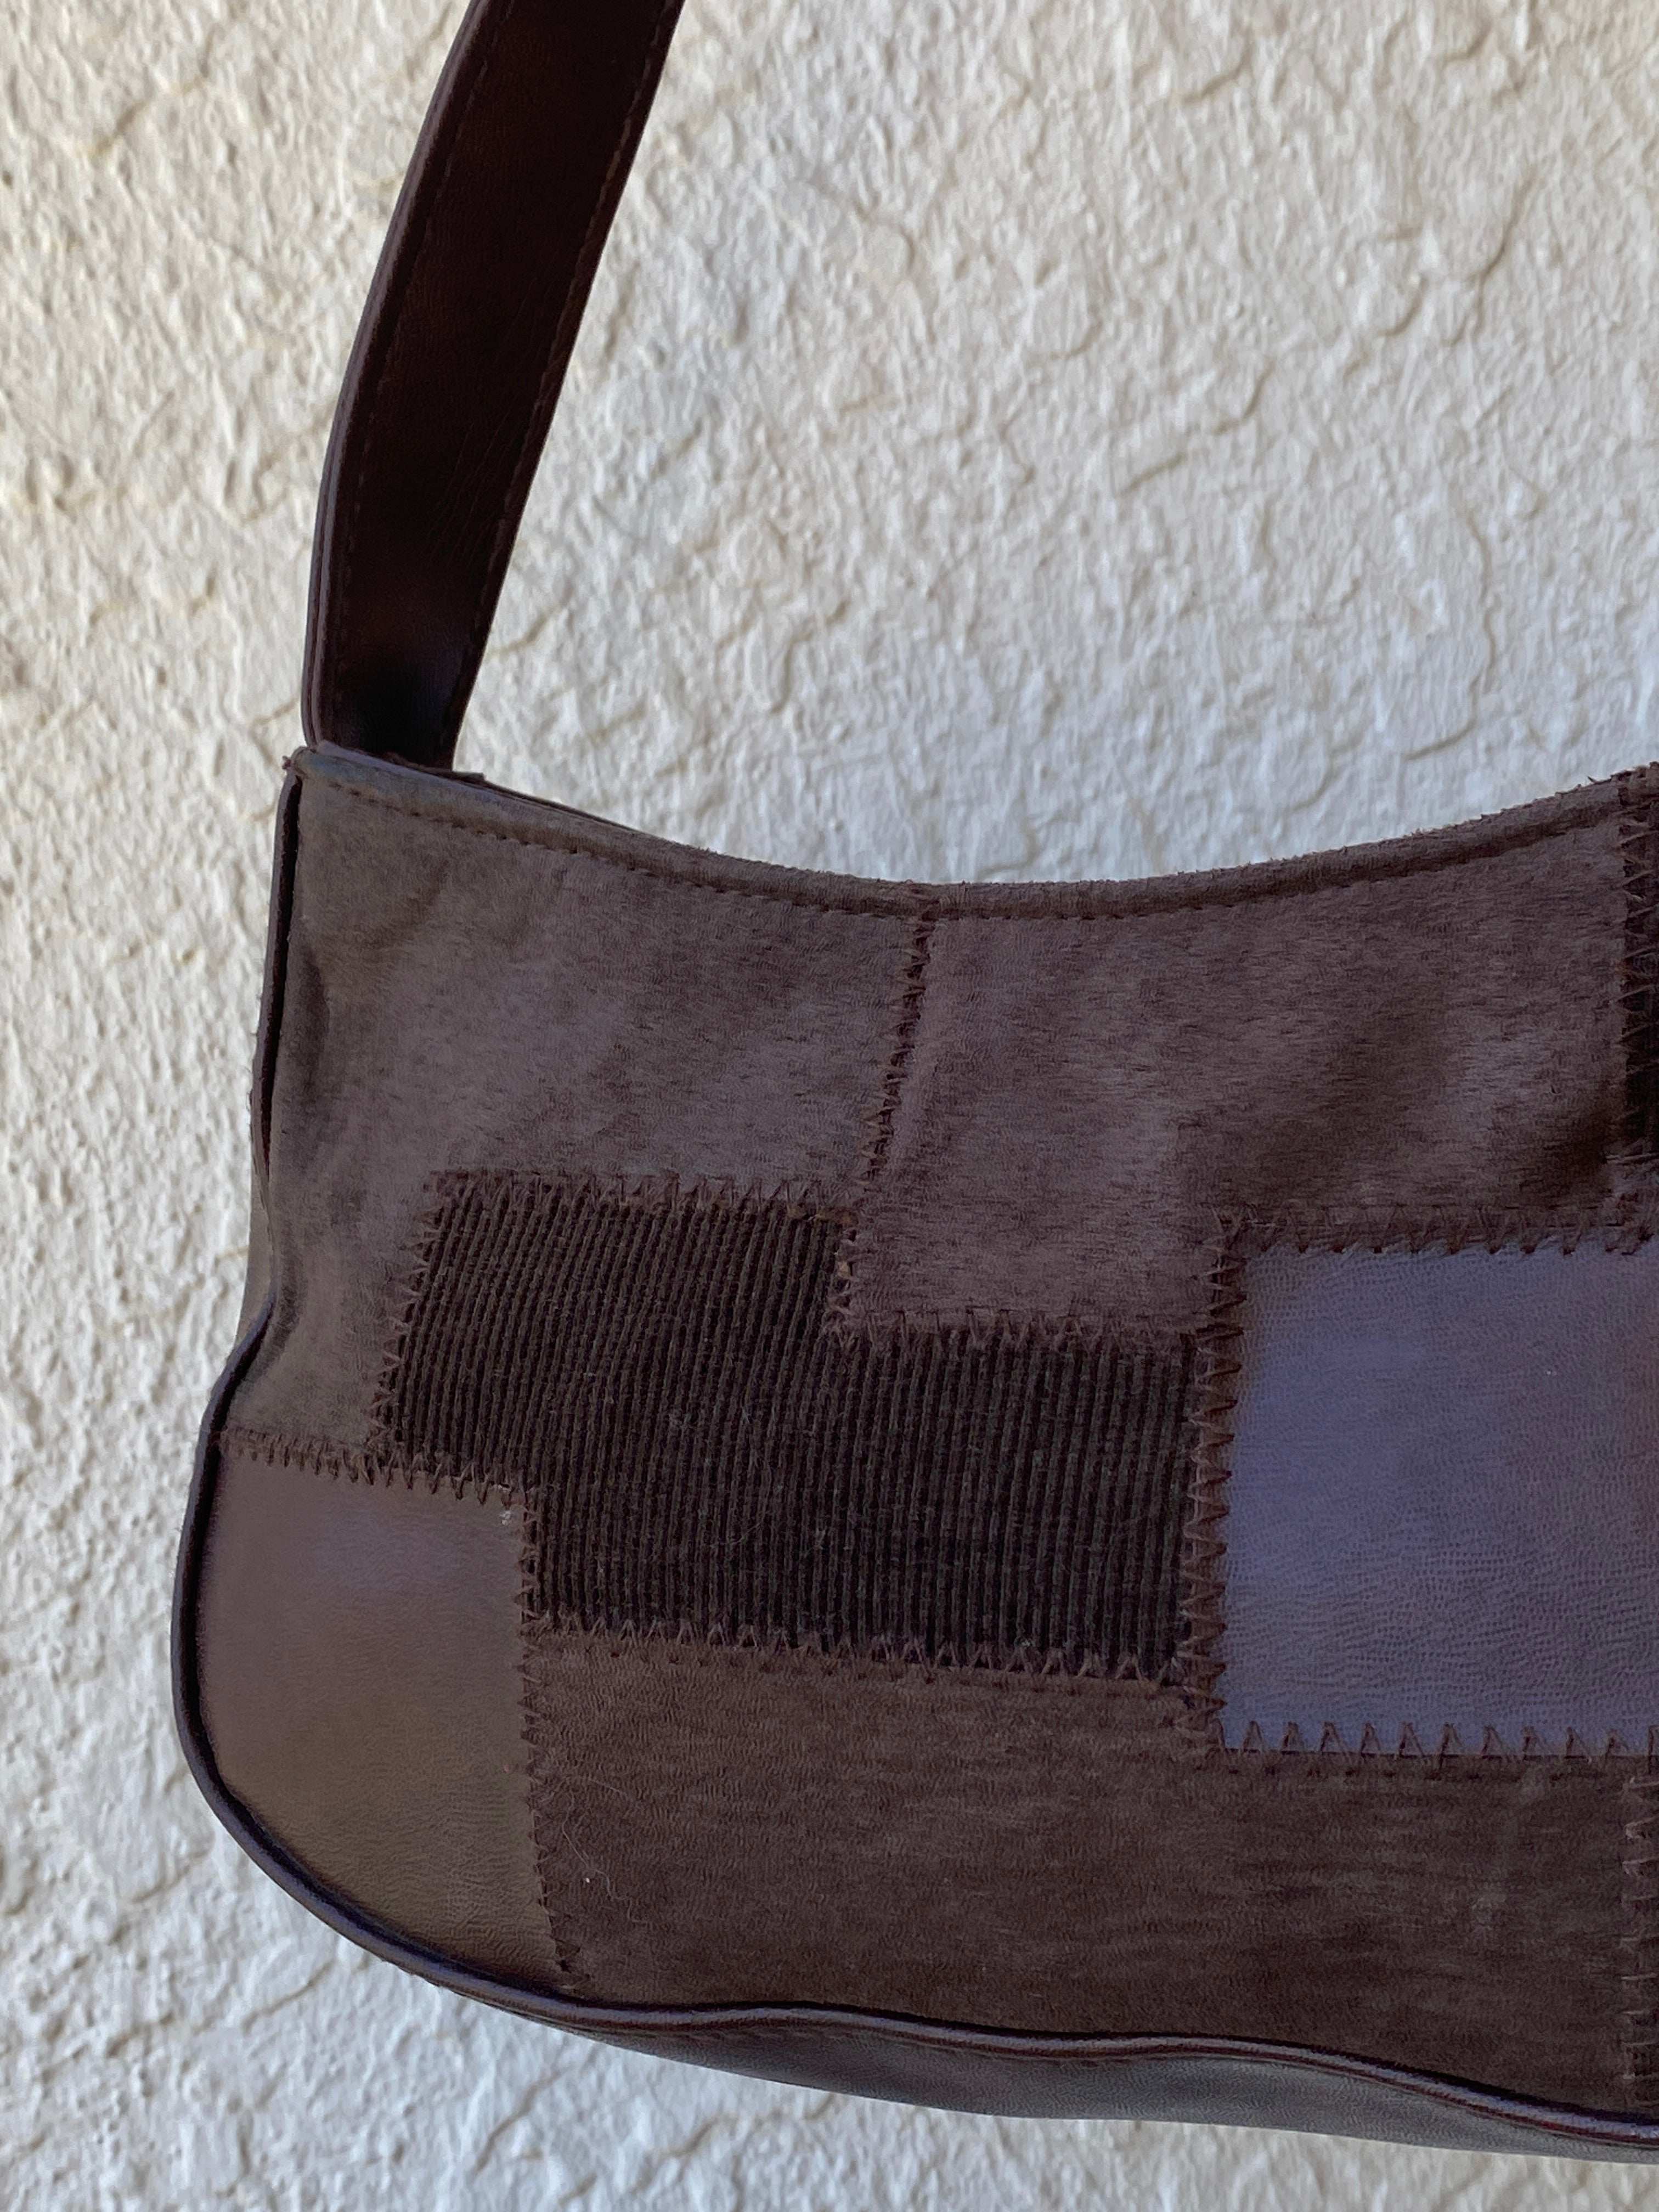 Y2k Mini Patchwork Brown Leather Bag - Balagan Vintage Mini handbag 00s, bag, handbag, NEW IN, shoulder bag